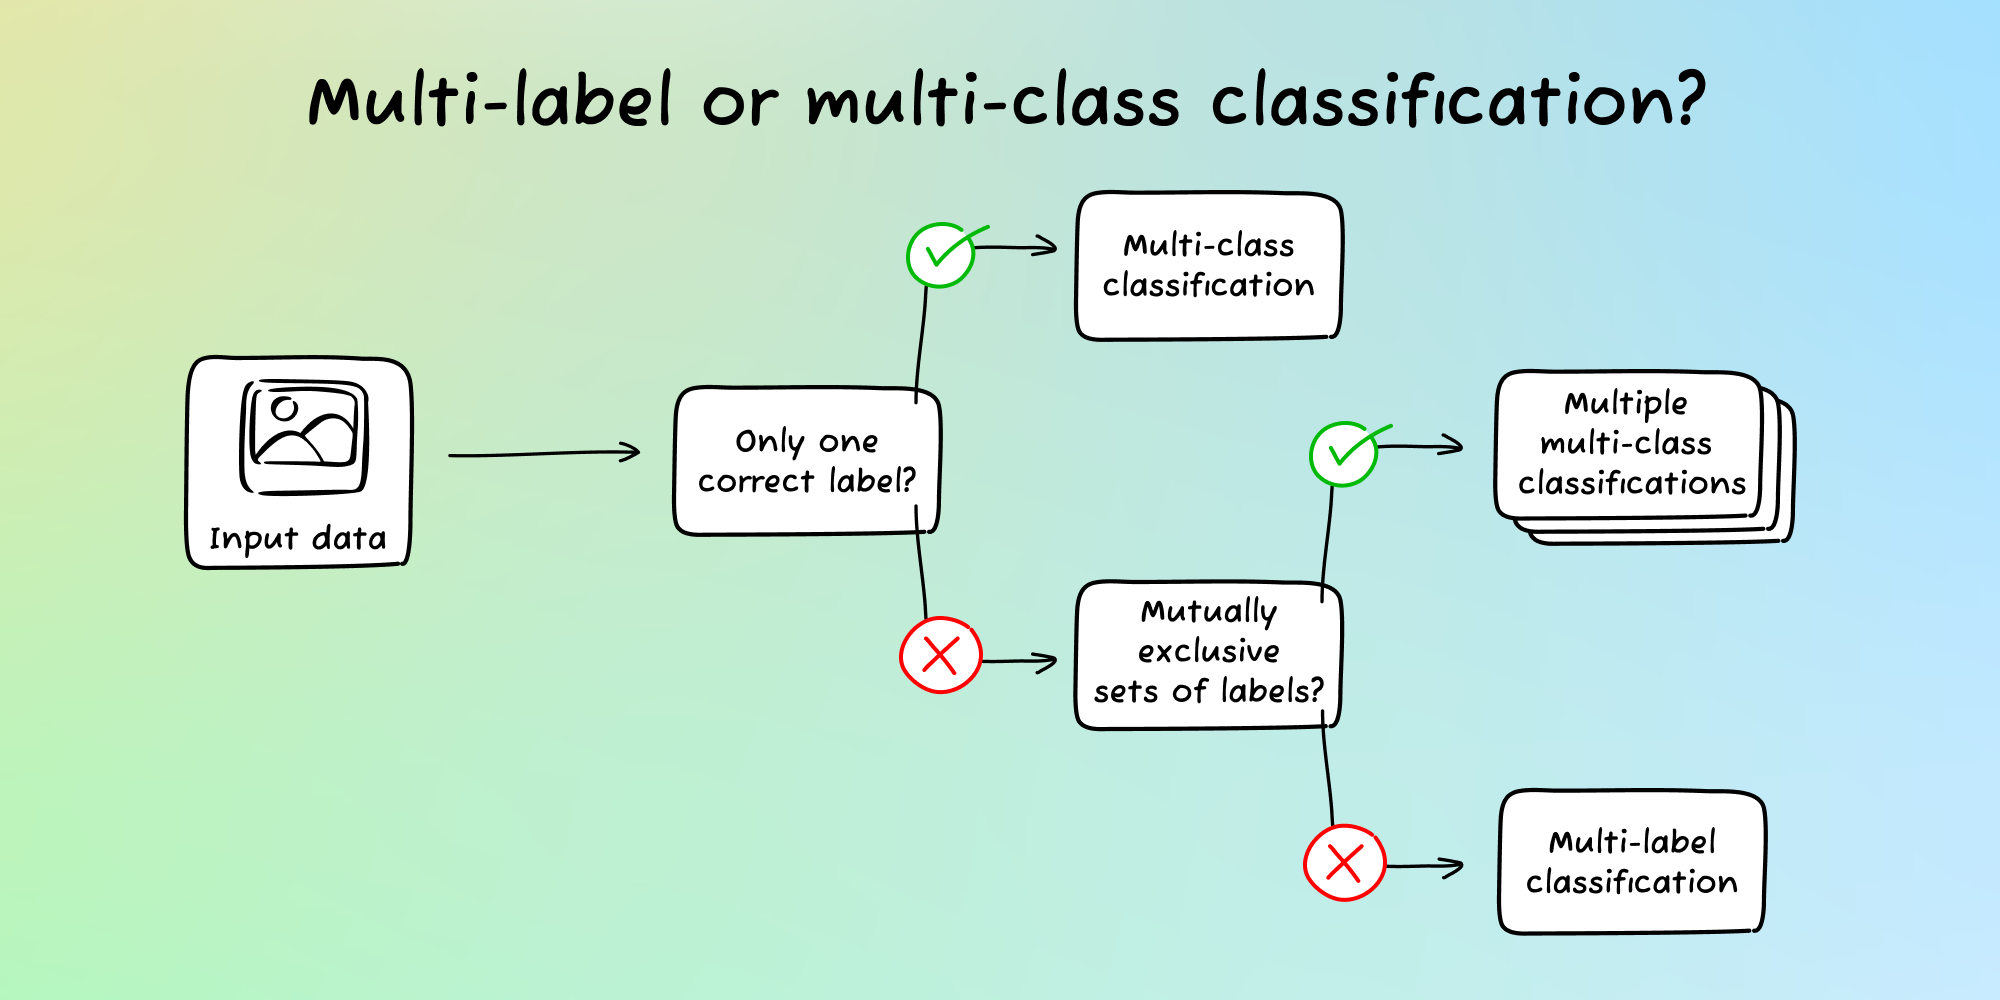 Multi-class classification vs. multi-label classification